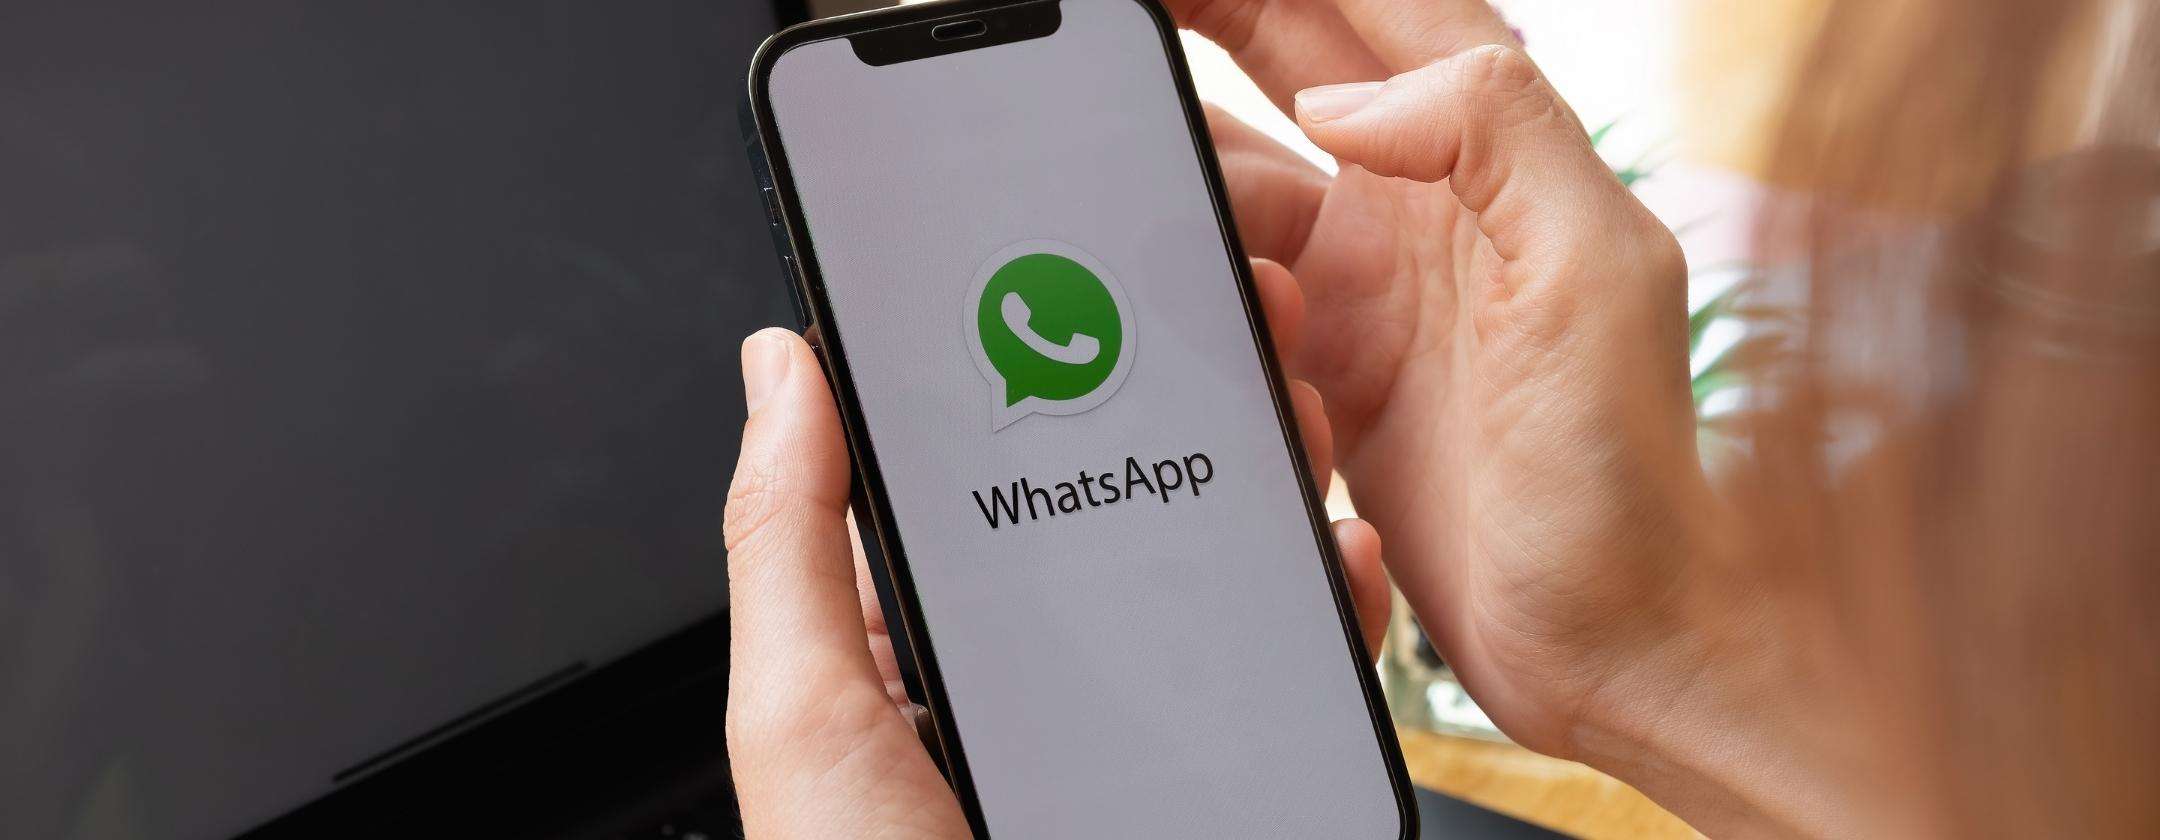 WhatsApp: come non farti hackerare l'account